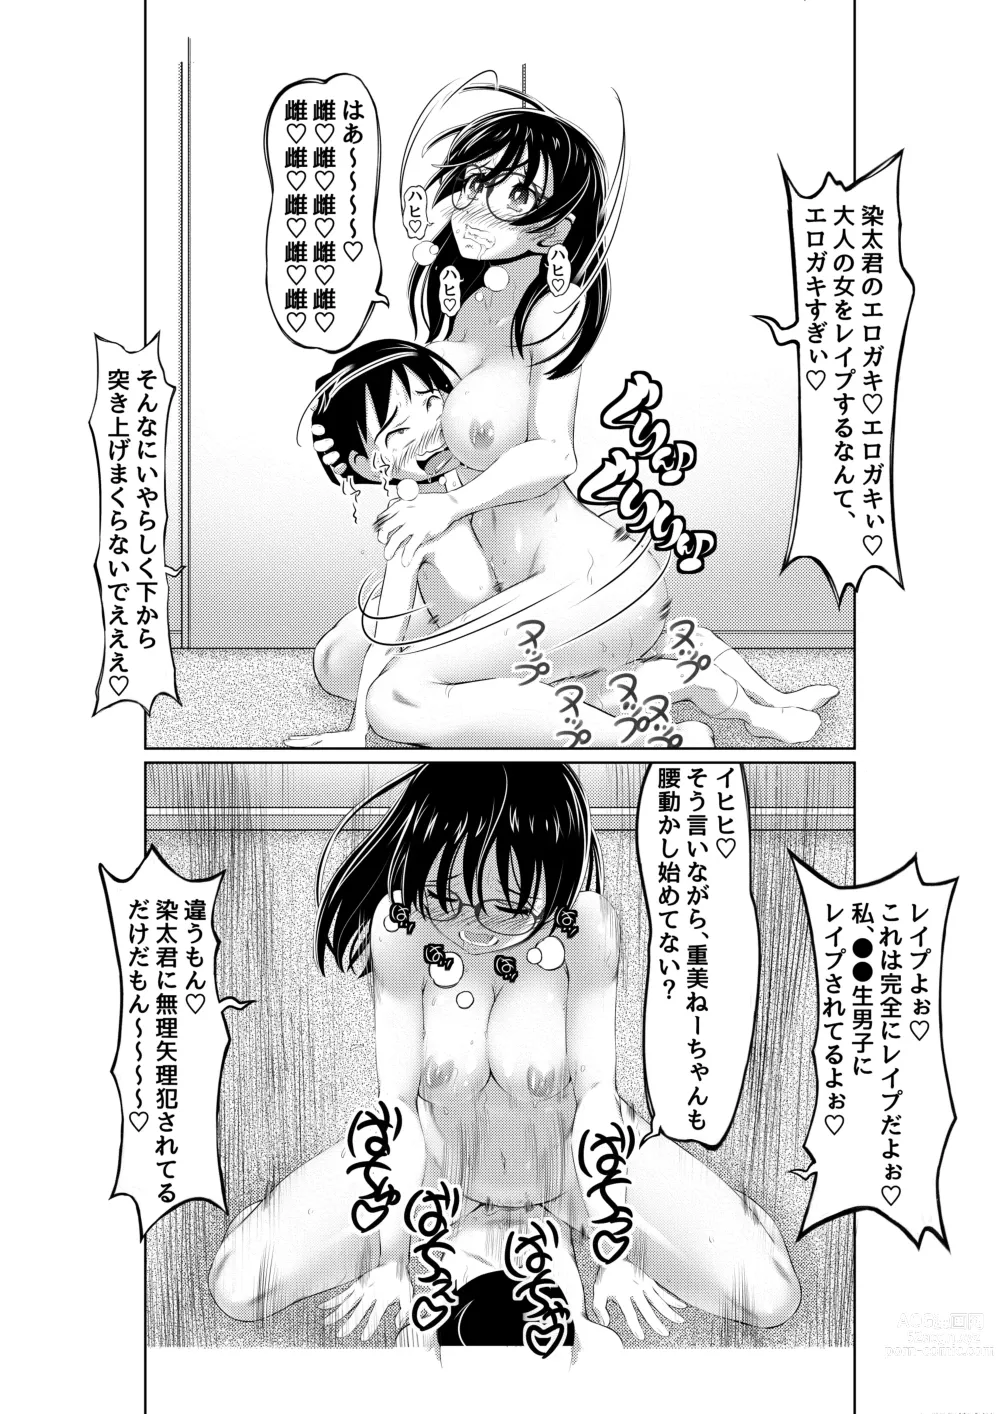 Page 34 of doujinshi Ecchi na Onna Mangakka Combi 2 Rensai Junbi wa Kitsui no da!